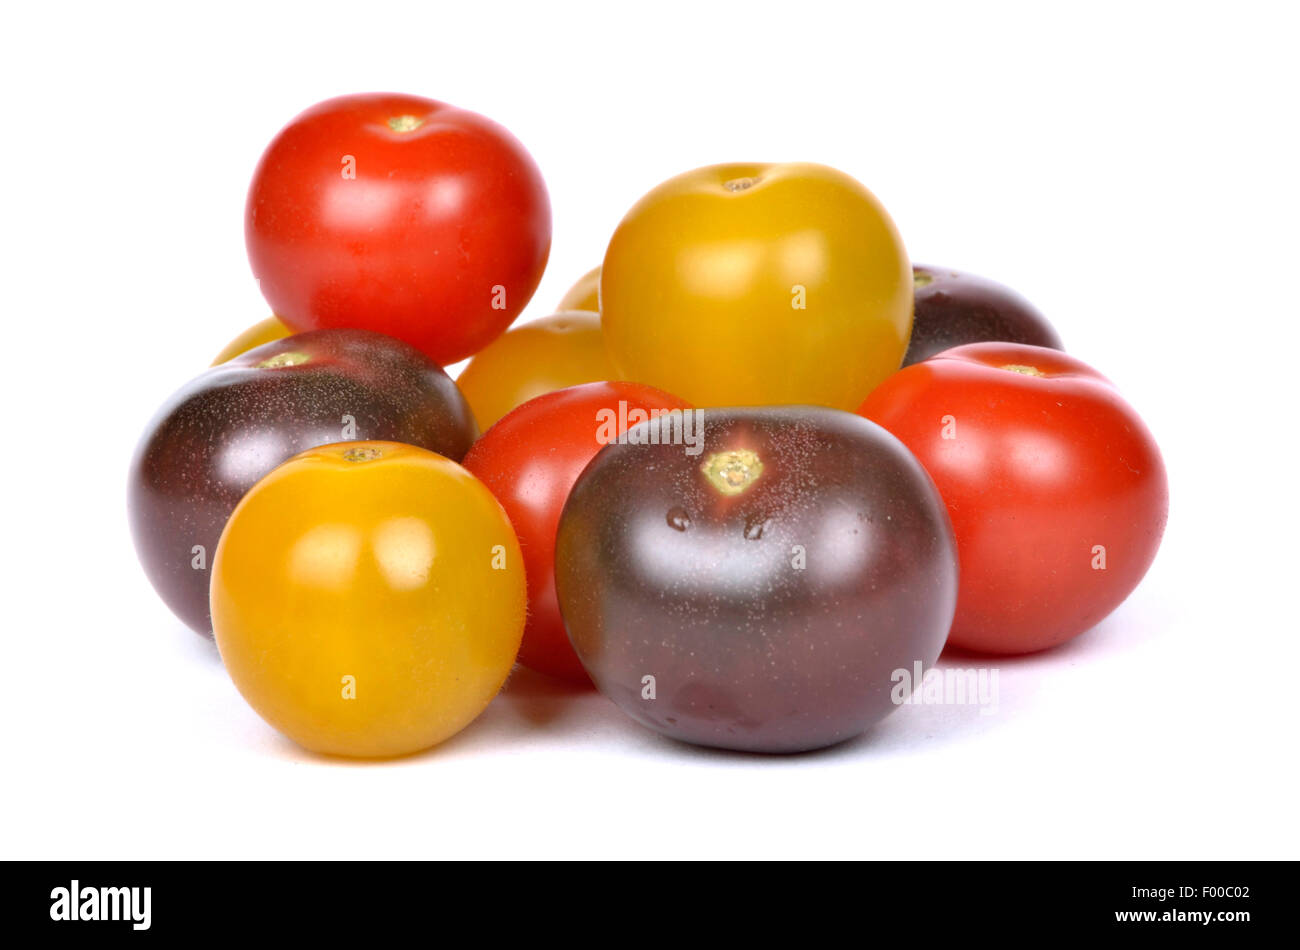 Giardino (pomodoro Solanum lycopersicum, Lycopersicon esculentum), pomodori ciliegia in giallo, rosso e nero Foto Stock